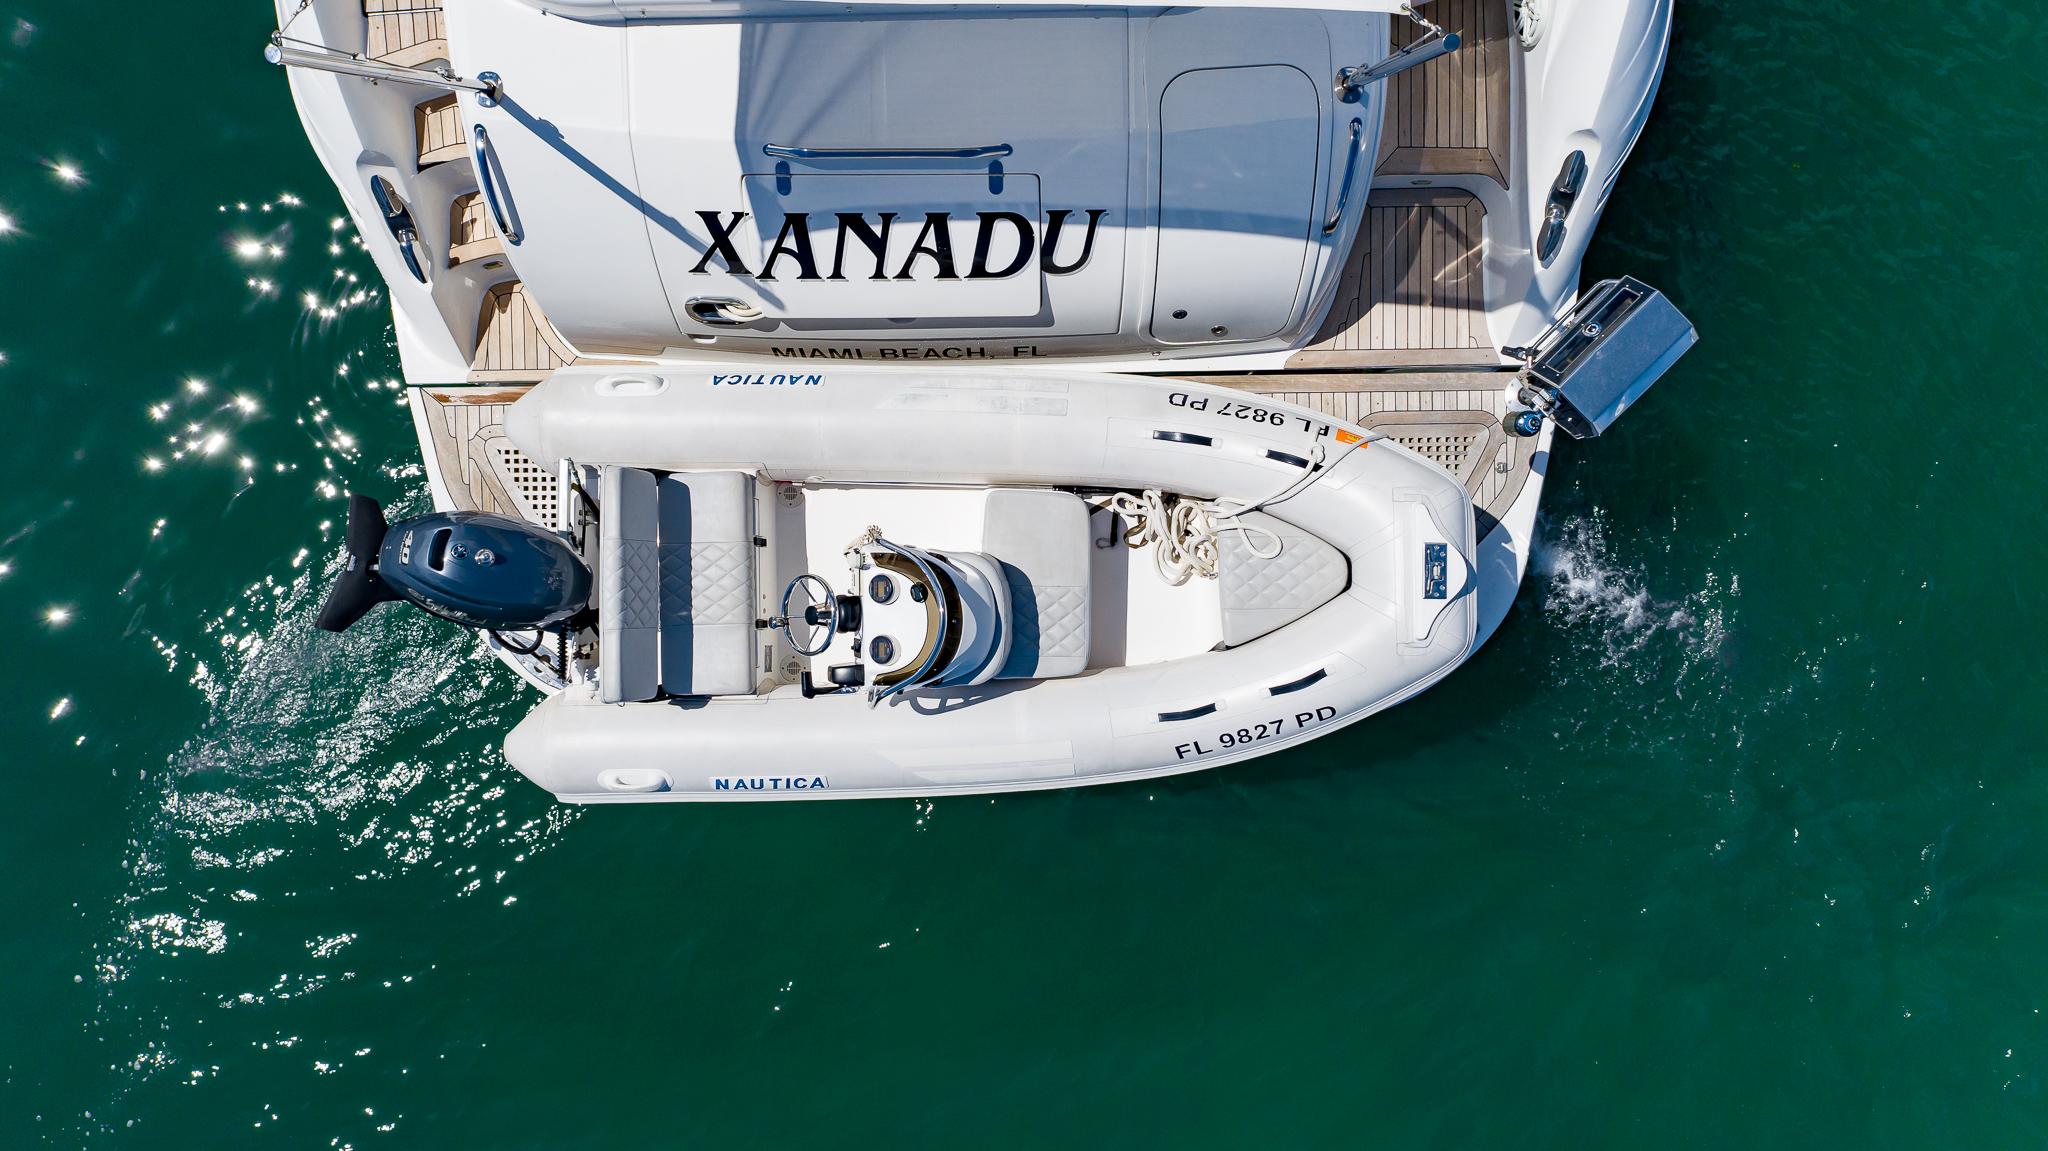 Xanadu Yacht Photos Pics 